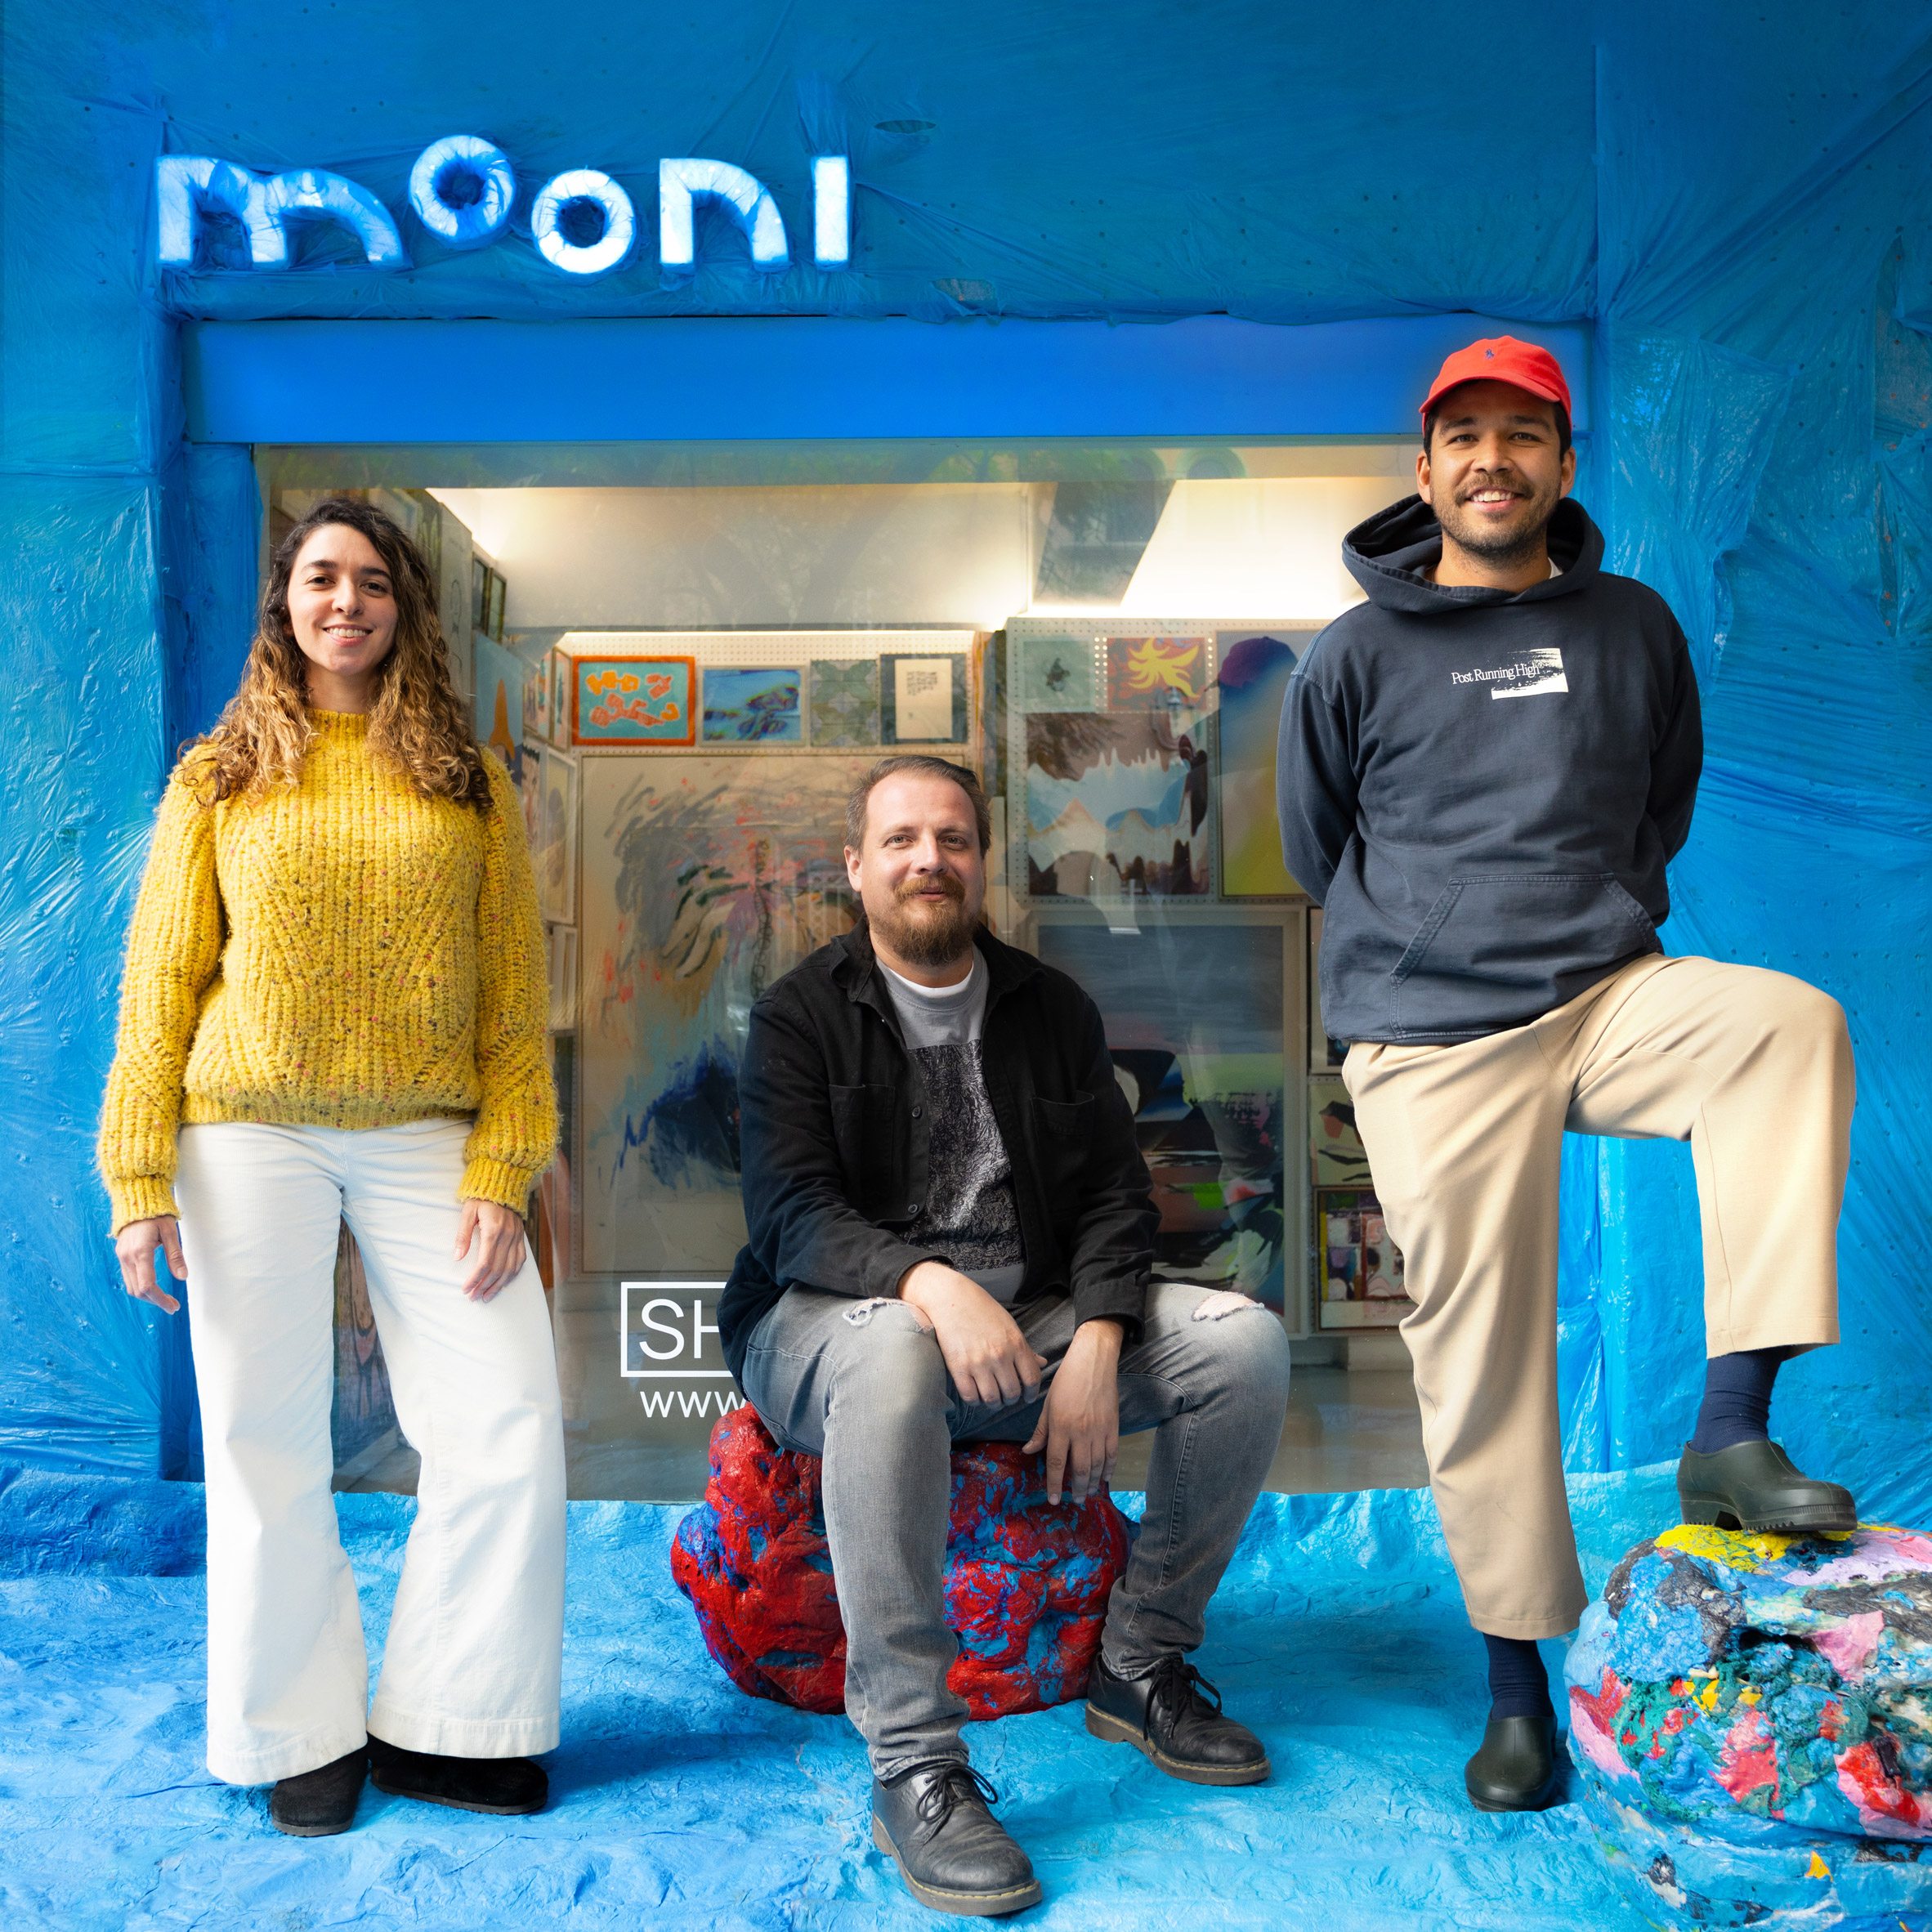 Bolsón用回收塑料内饰装饰墨西哥城商店|ART-Arrakis | 建筑室内设计的创新与灵感